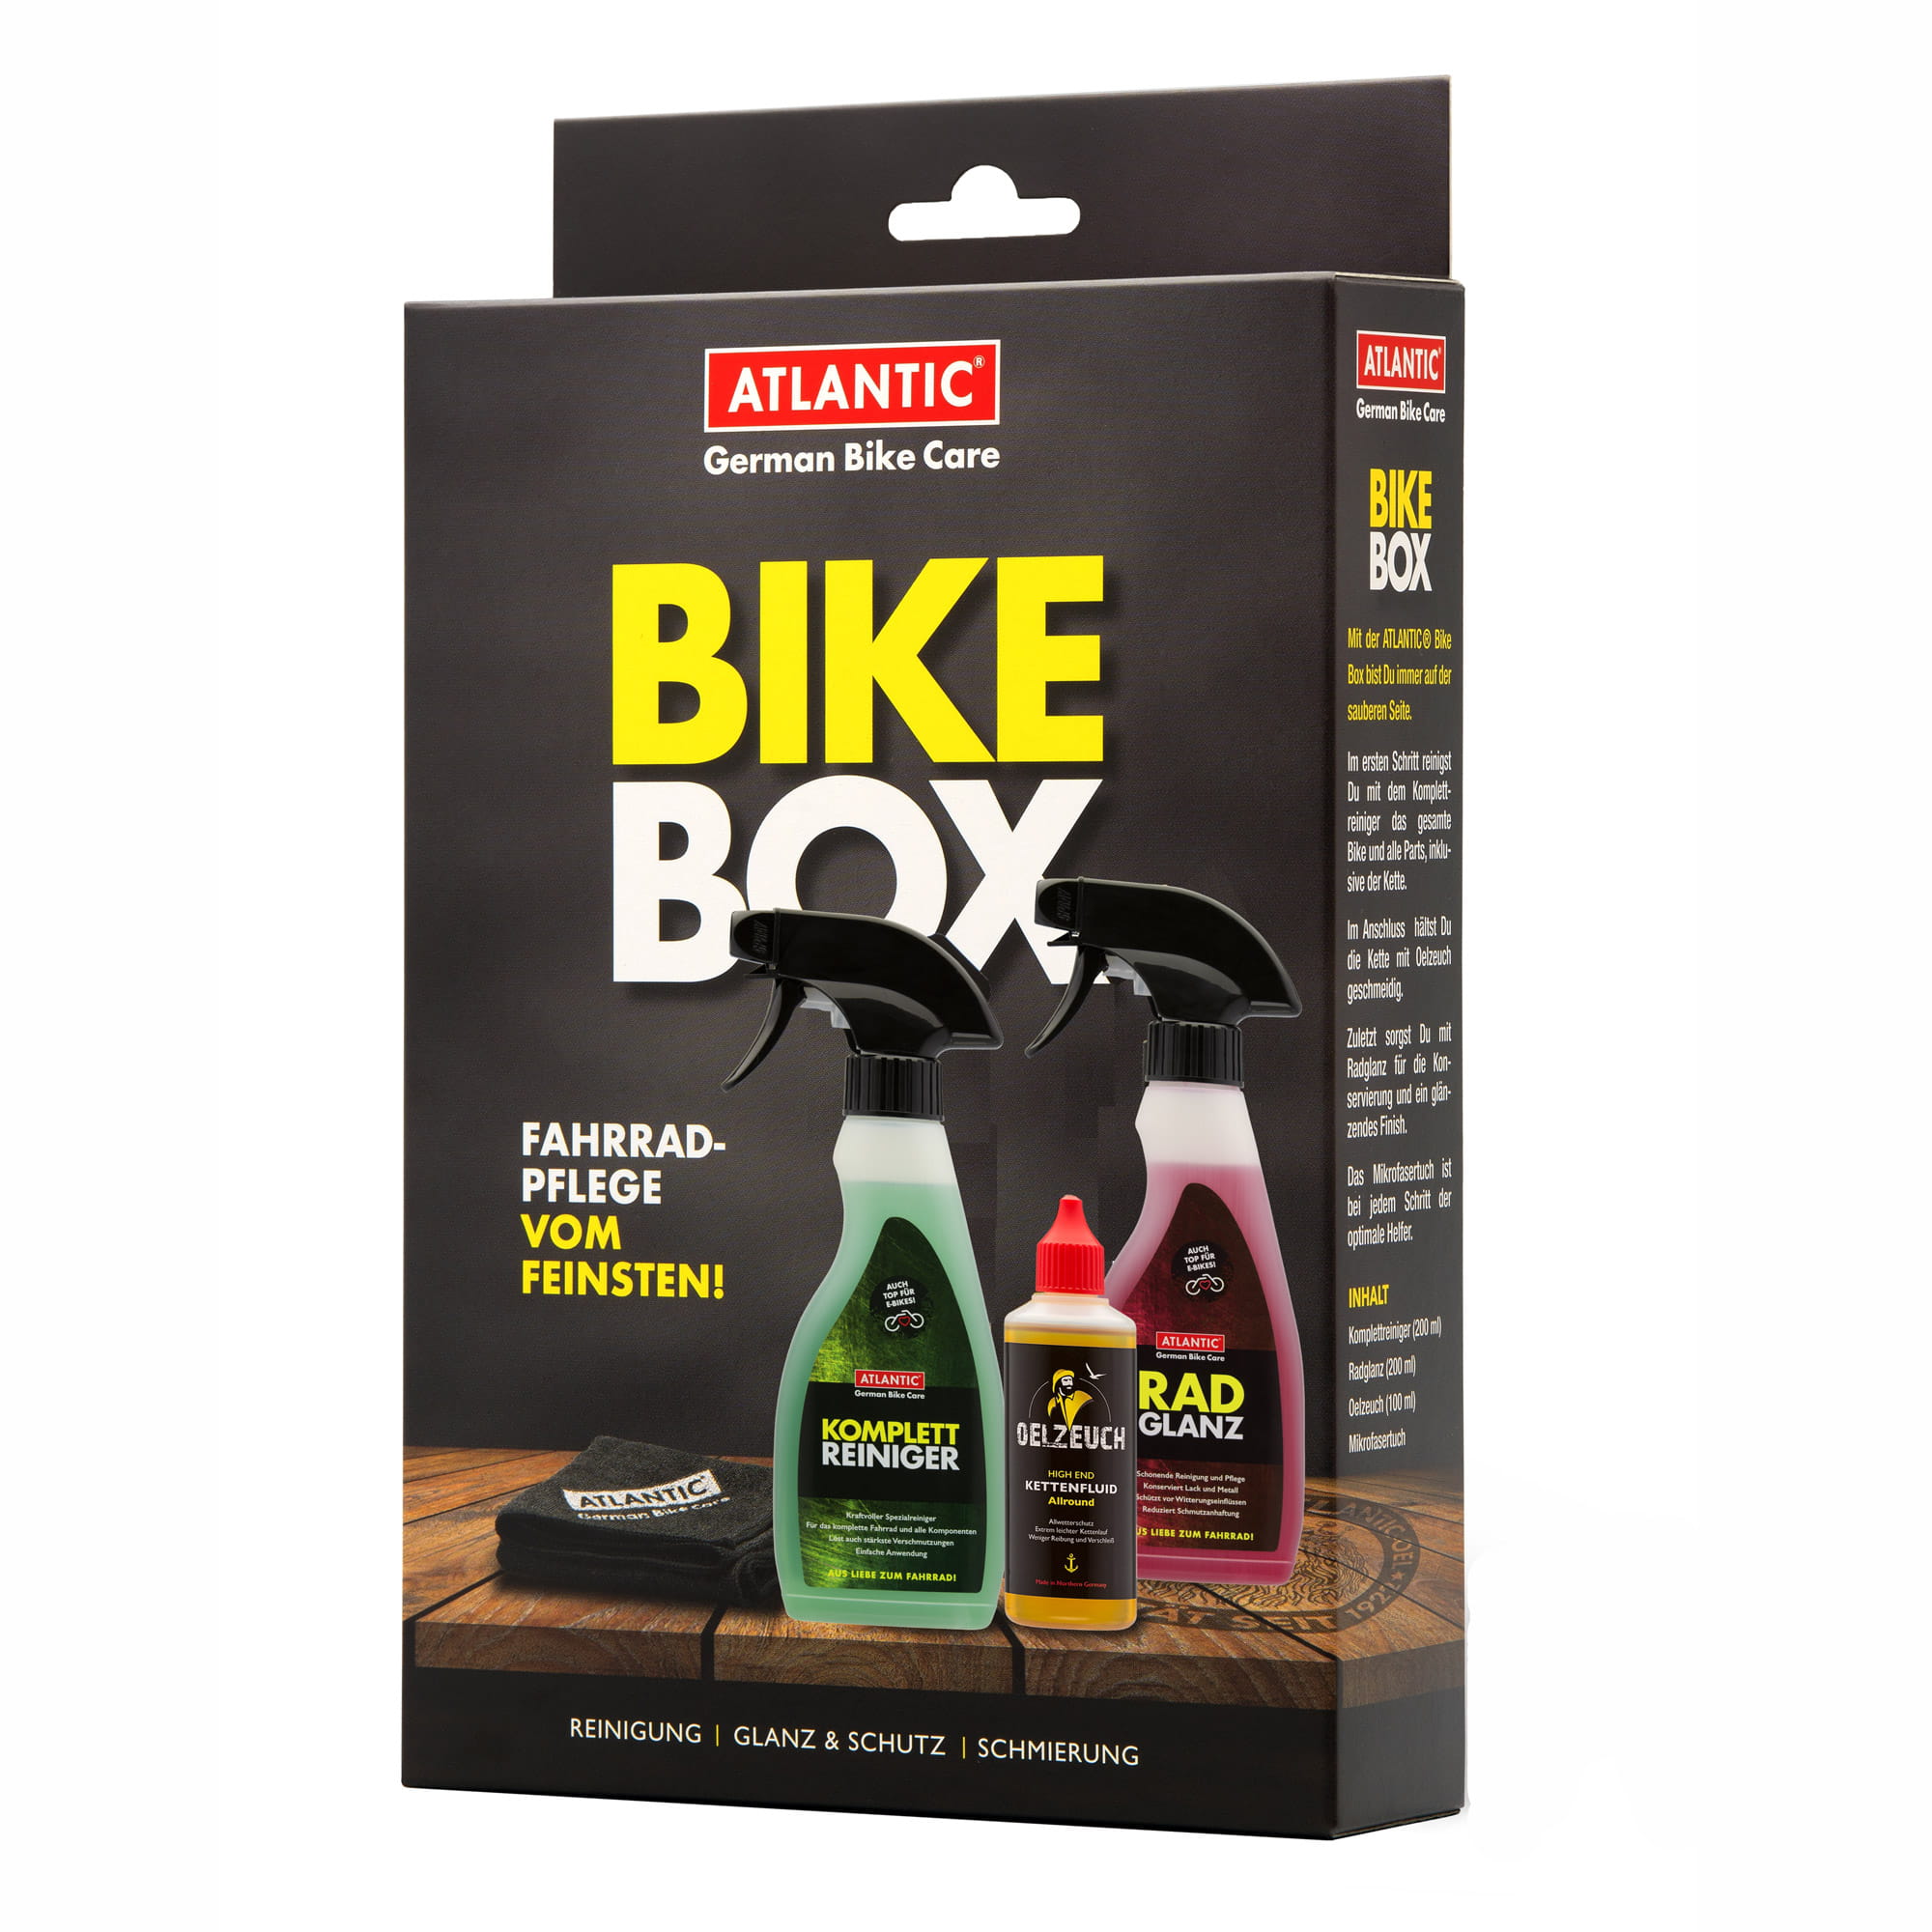 Atlantic Bike Box Set aus Radglanz, Complete Cleaner, Oelzeuch, Mikrofasertuch